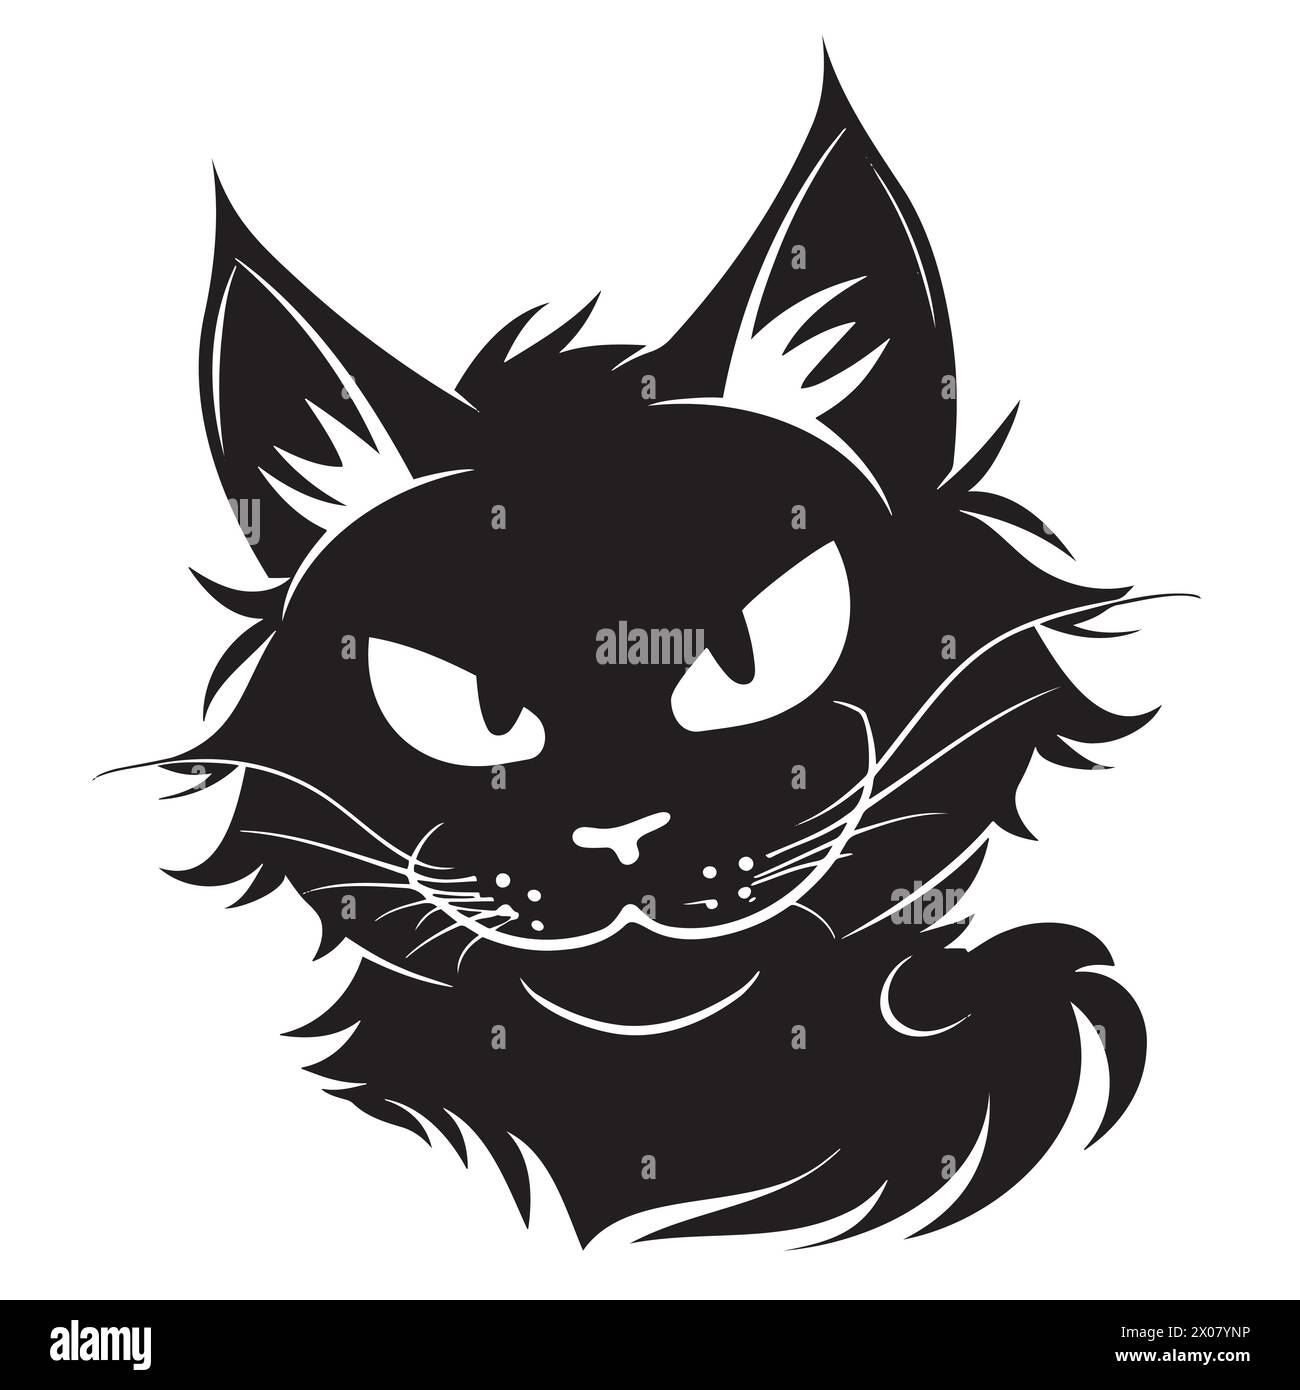 Dessin noir et blanc d'un chat Illustration de Vecteur